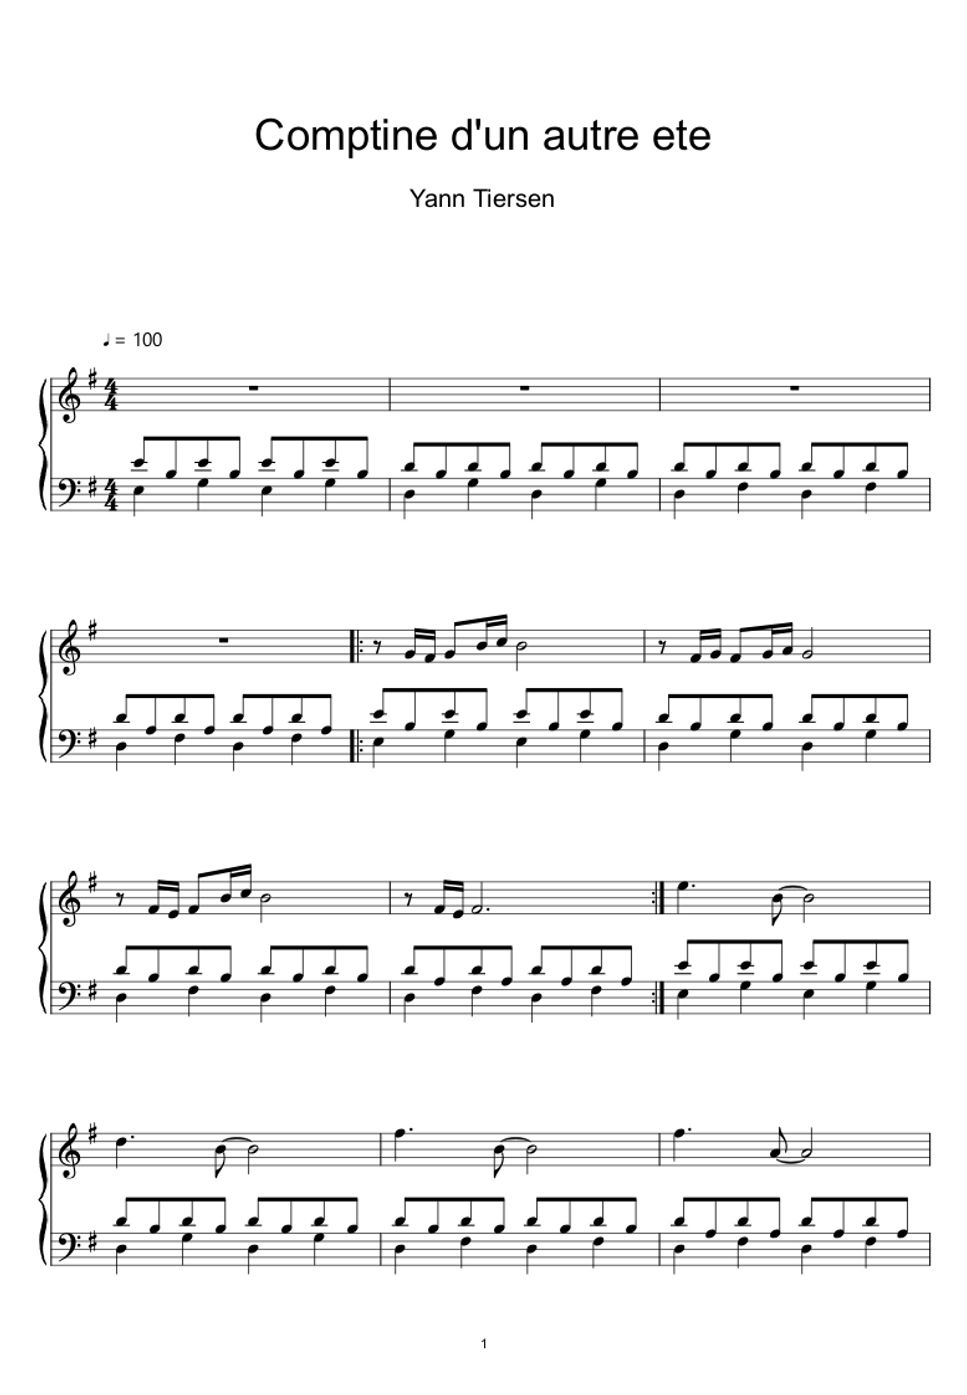 Yann Tiersen - Comptine D'un Autre Été (Sheet Music, MIDI,) by sayu